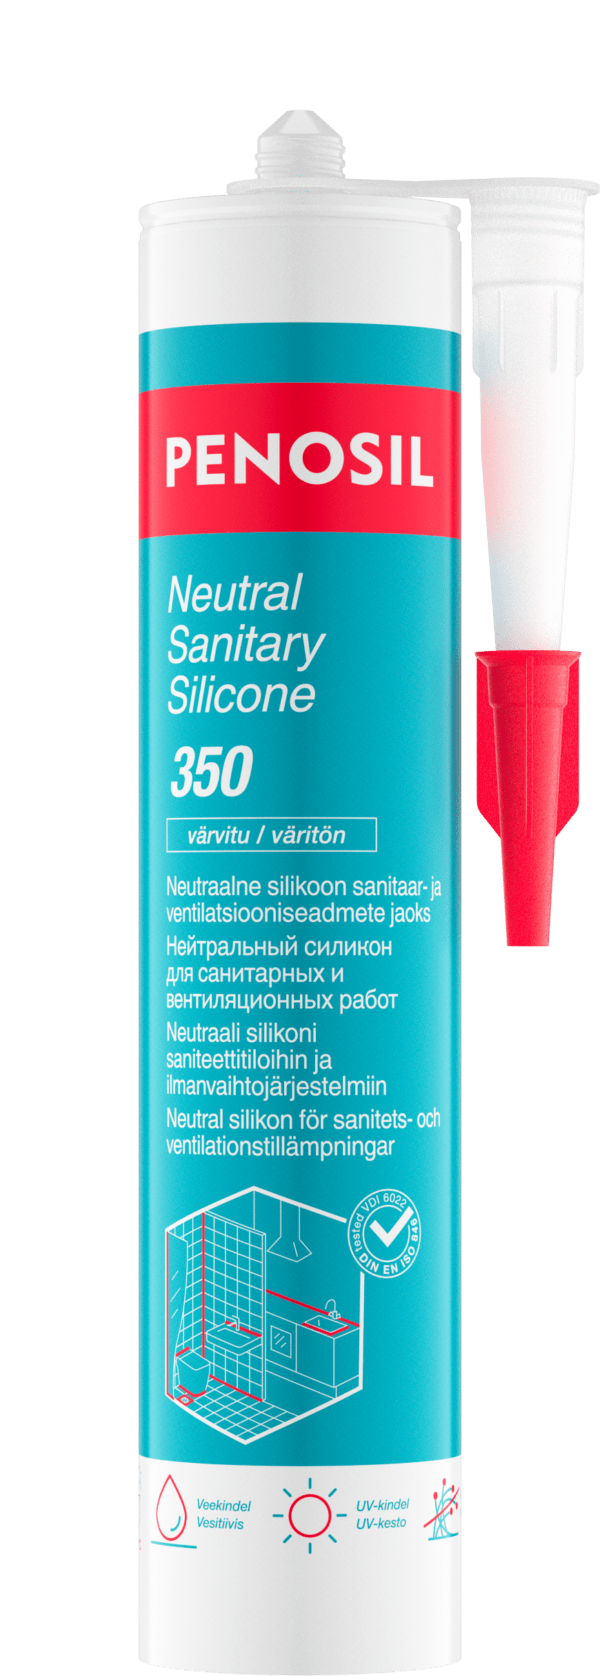 PENOSIL Neutral Sanitary Silicone 350 / 350c